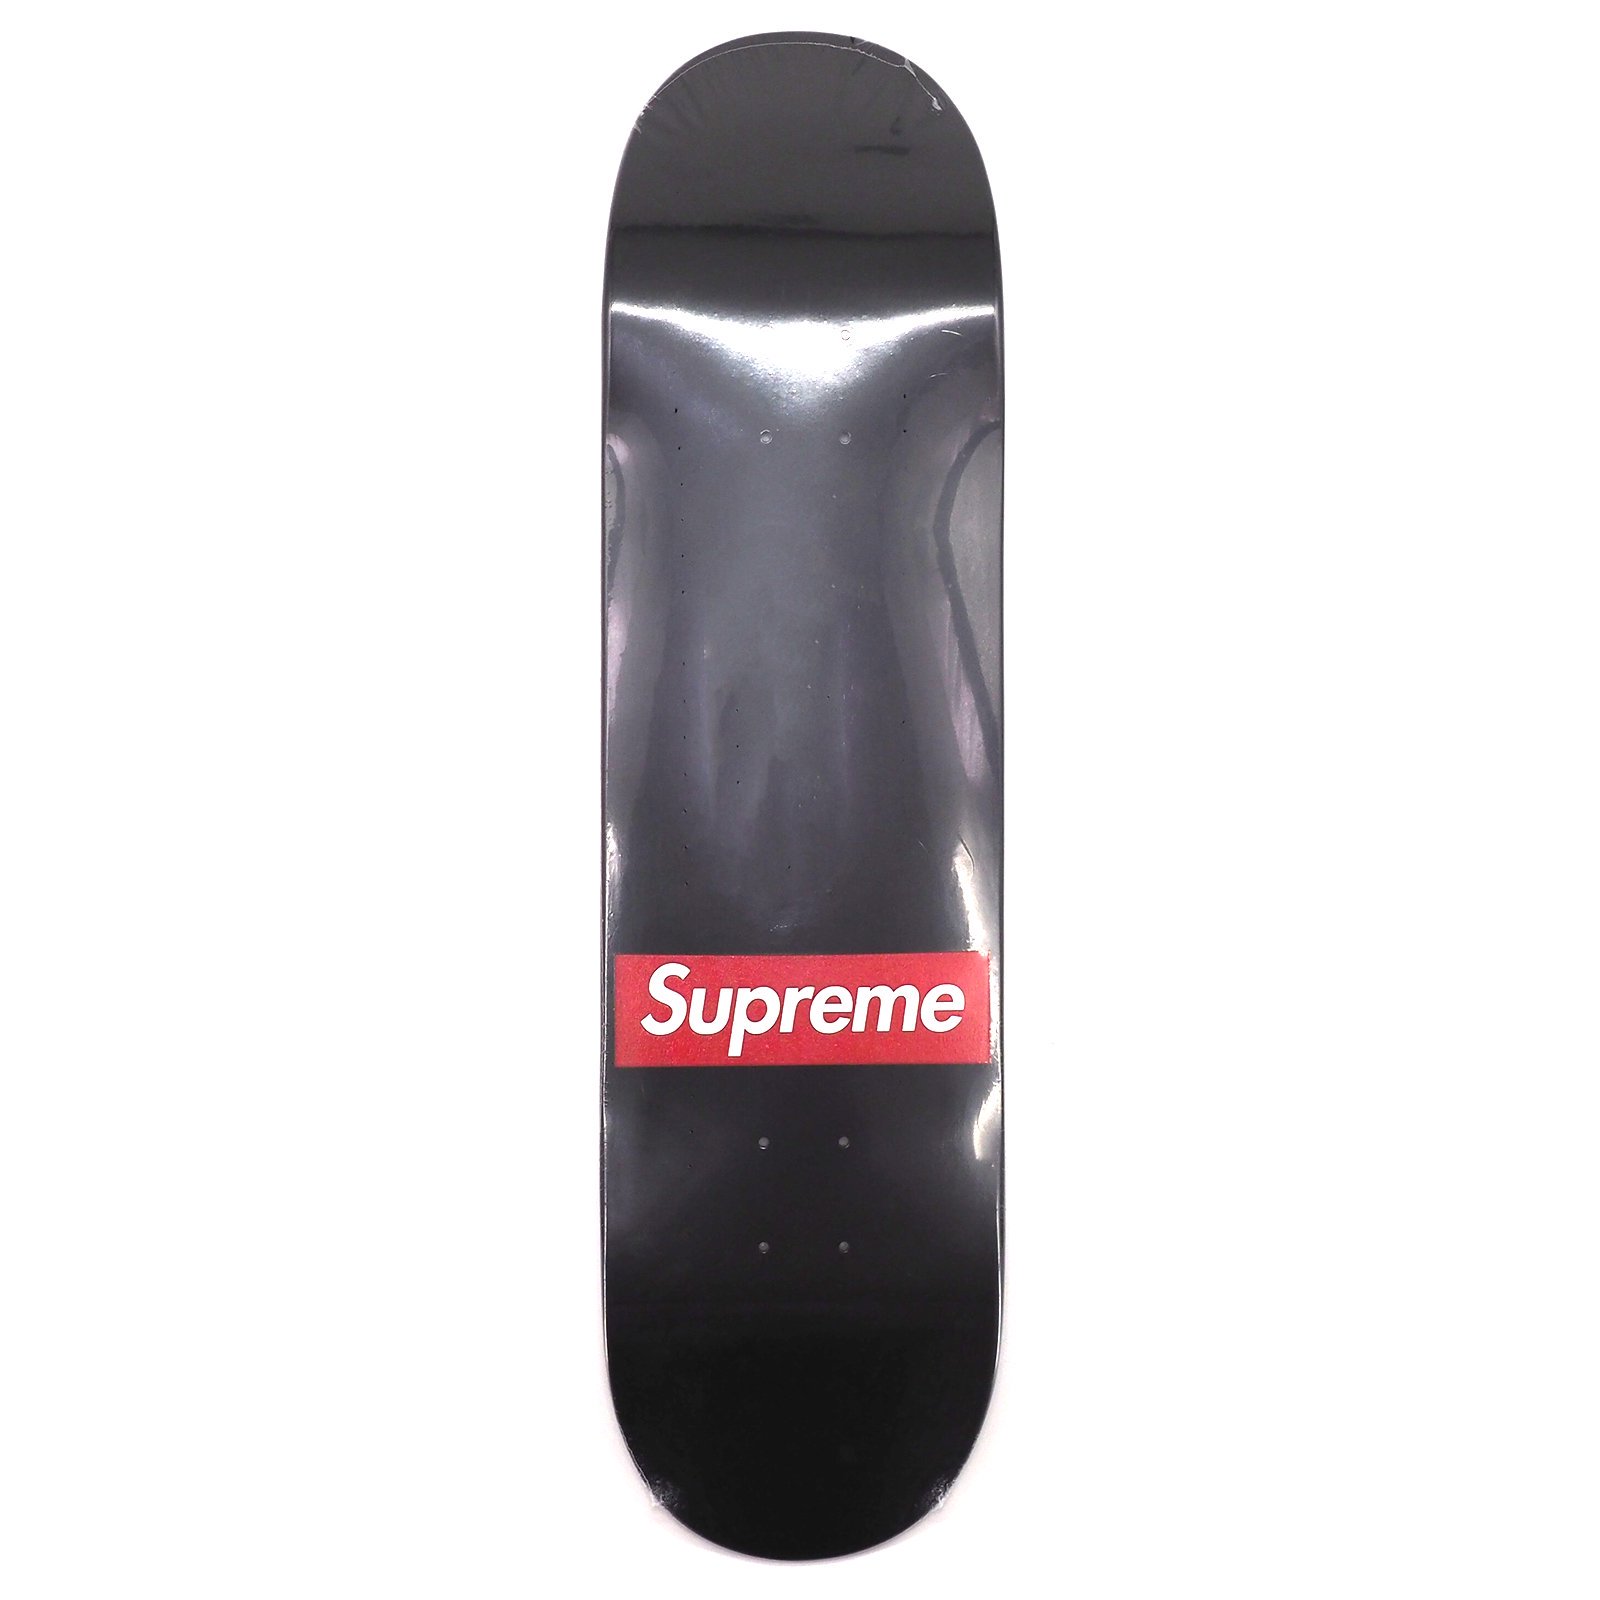 ナチュラル Supreme Routed Box Logo Skateboard 【SALE】 - スケート